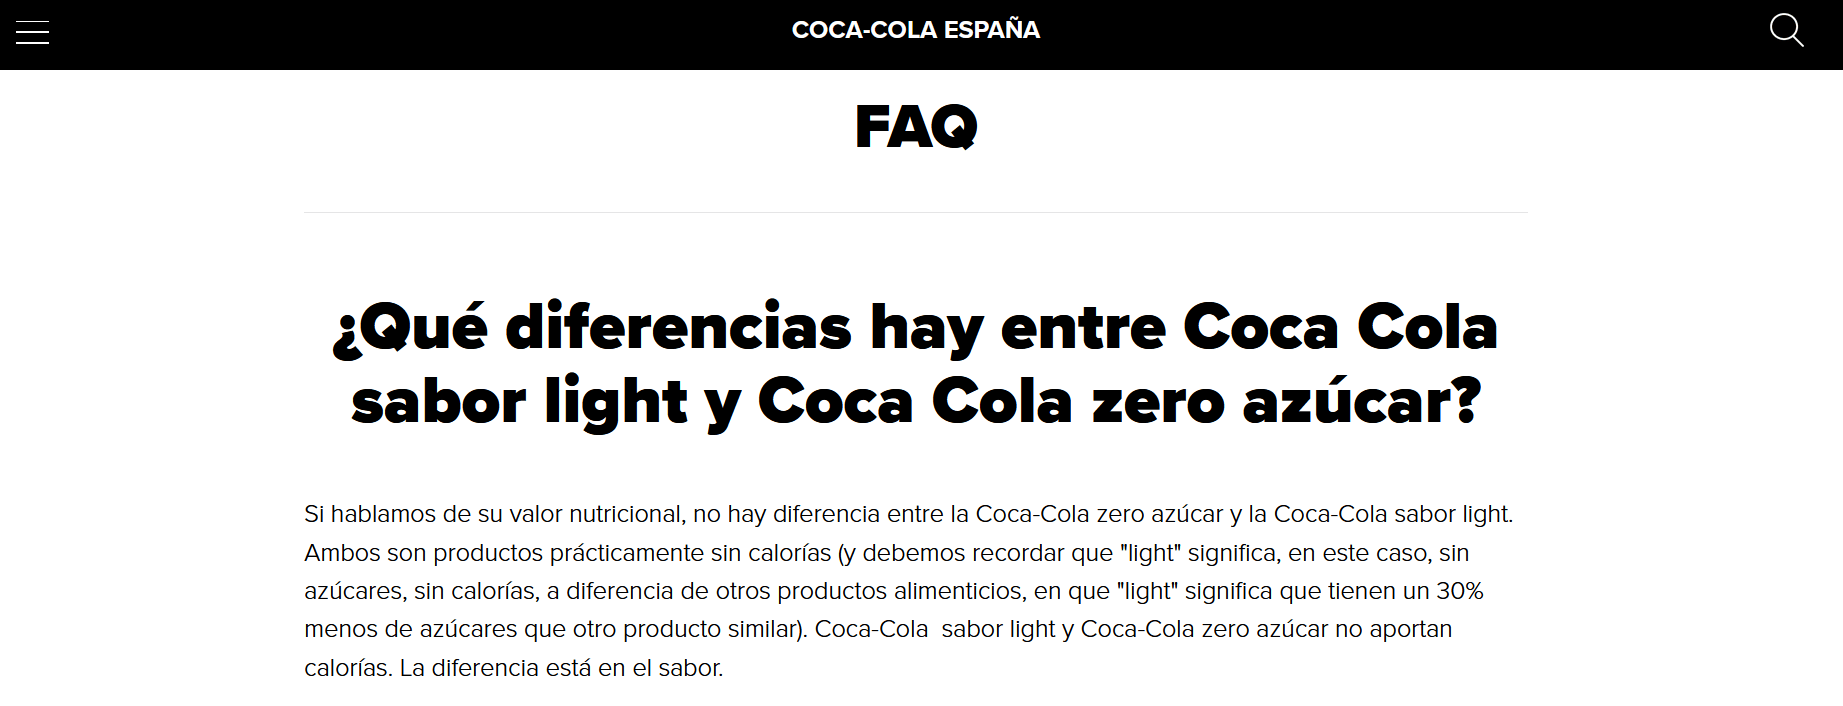 Captura de la página FAQ de Coca Cola: diferencias entre Coca Cola sabor light y Coca Cola zero azúcar